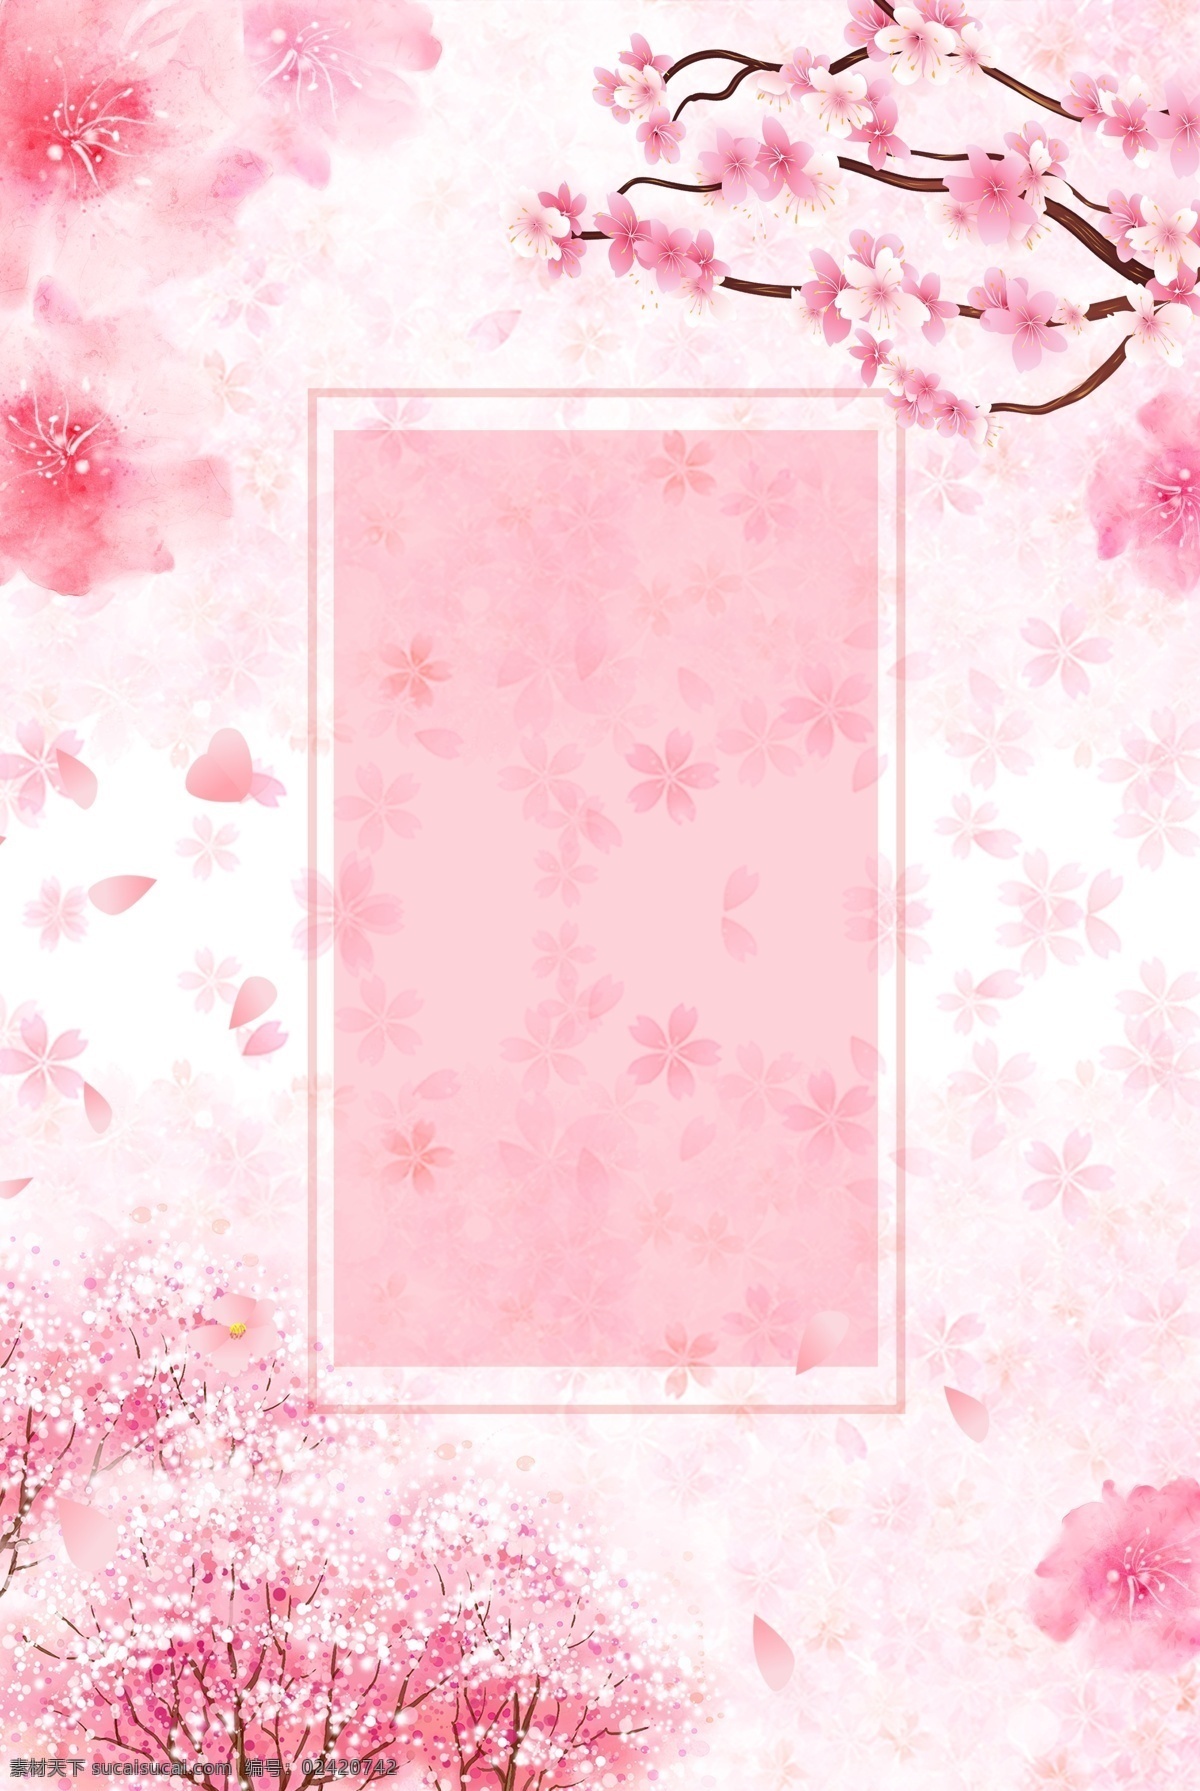 樱花节 樱花树 活动 促销 海报 樱花季 樱花 唯美 浪漫 樱花背景 活动促销 花朵背景 清新